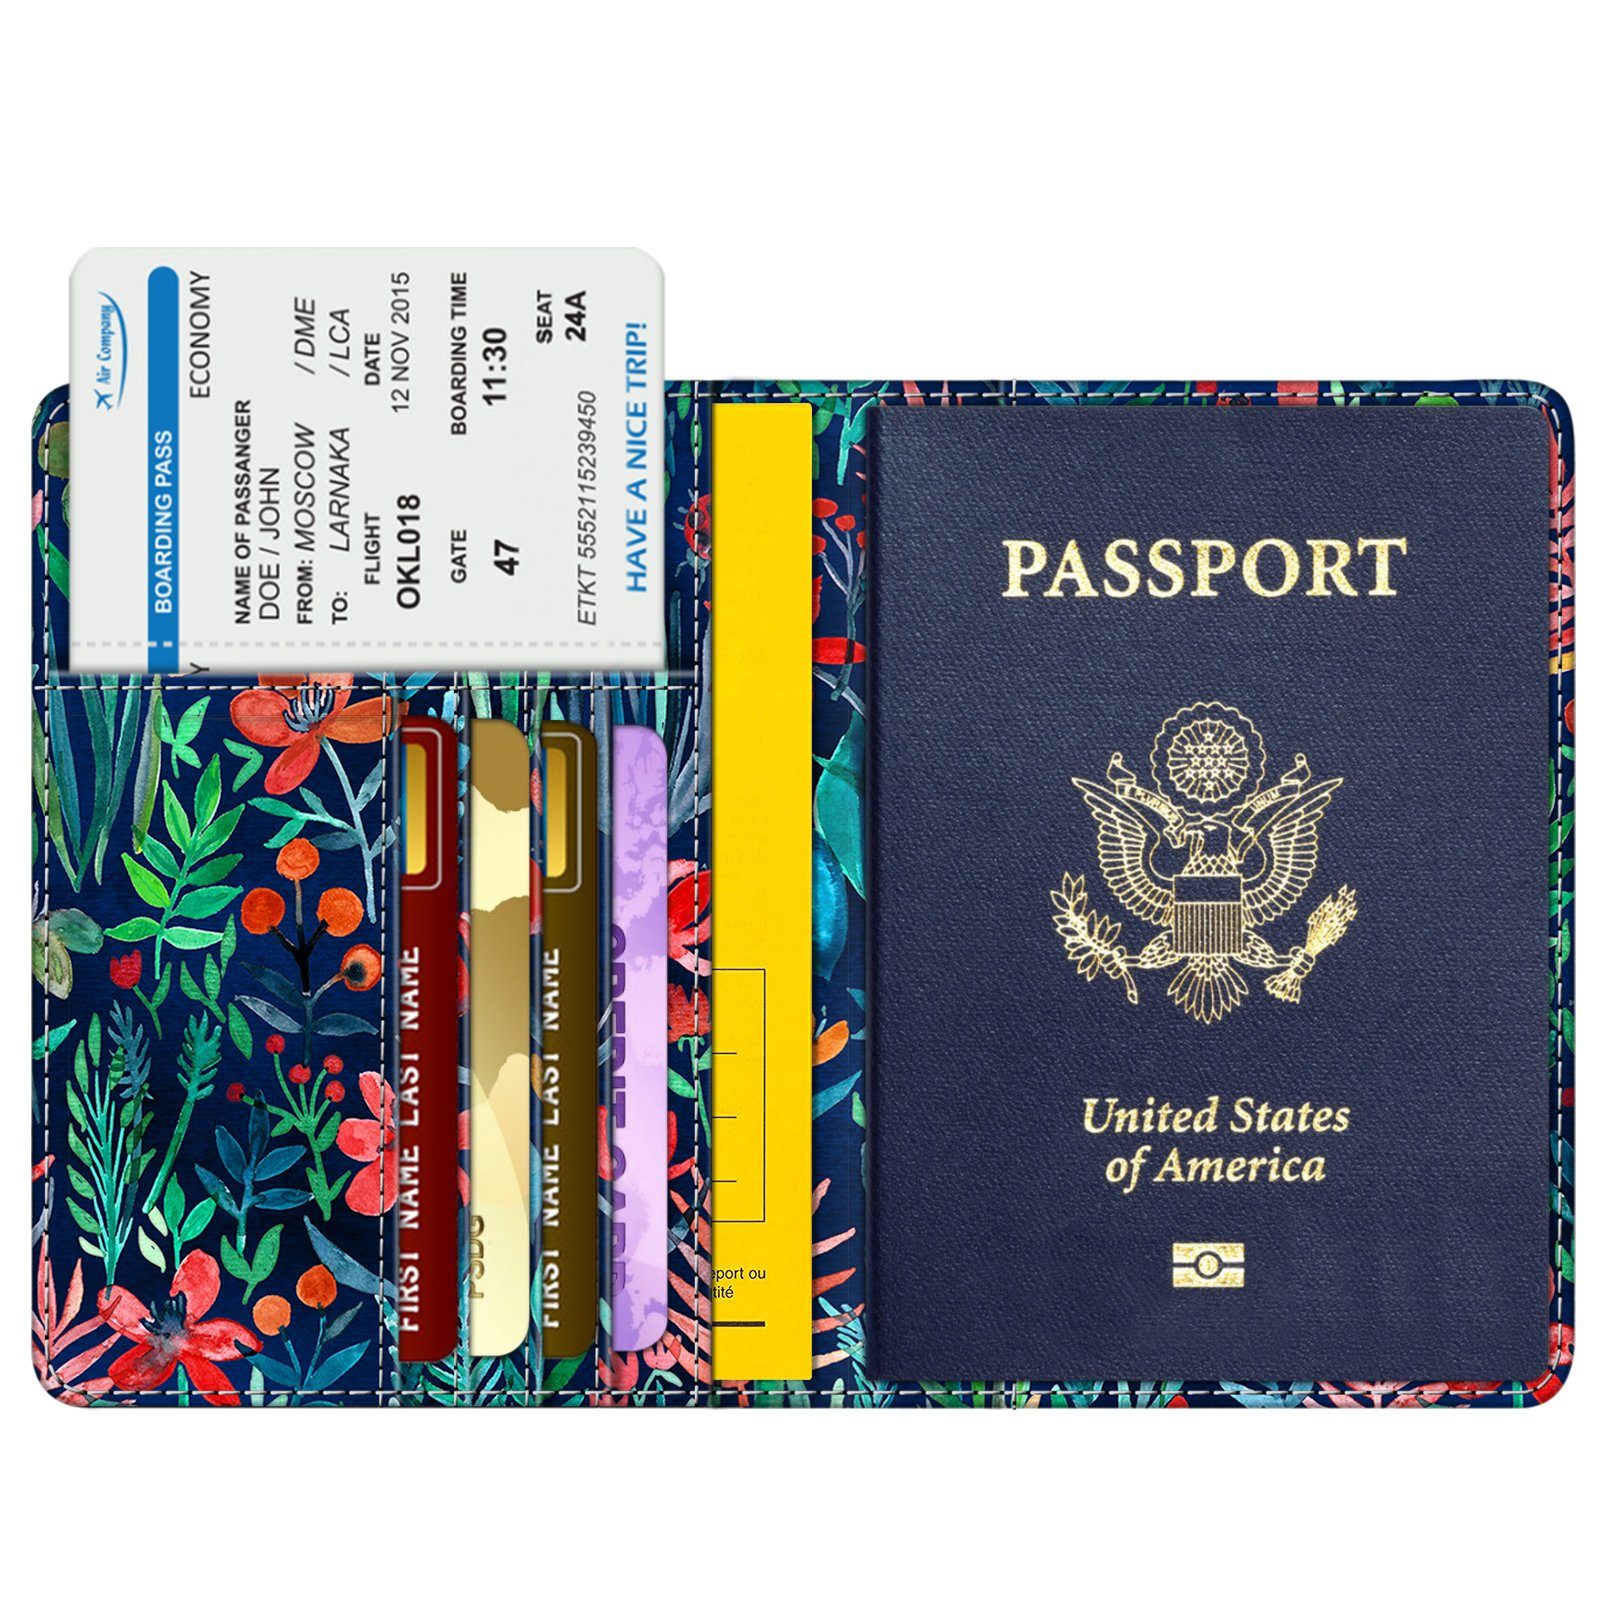 Fintie Smartphone-Hülle Reisepass Impfpass Schutzhülle - Premium Kunstleder Reisepasshülle, Travel Organizer mit RFID-Blockier für Kreditkarten, Ausweis usw.